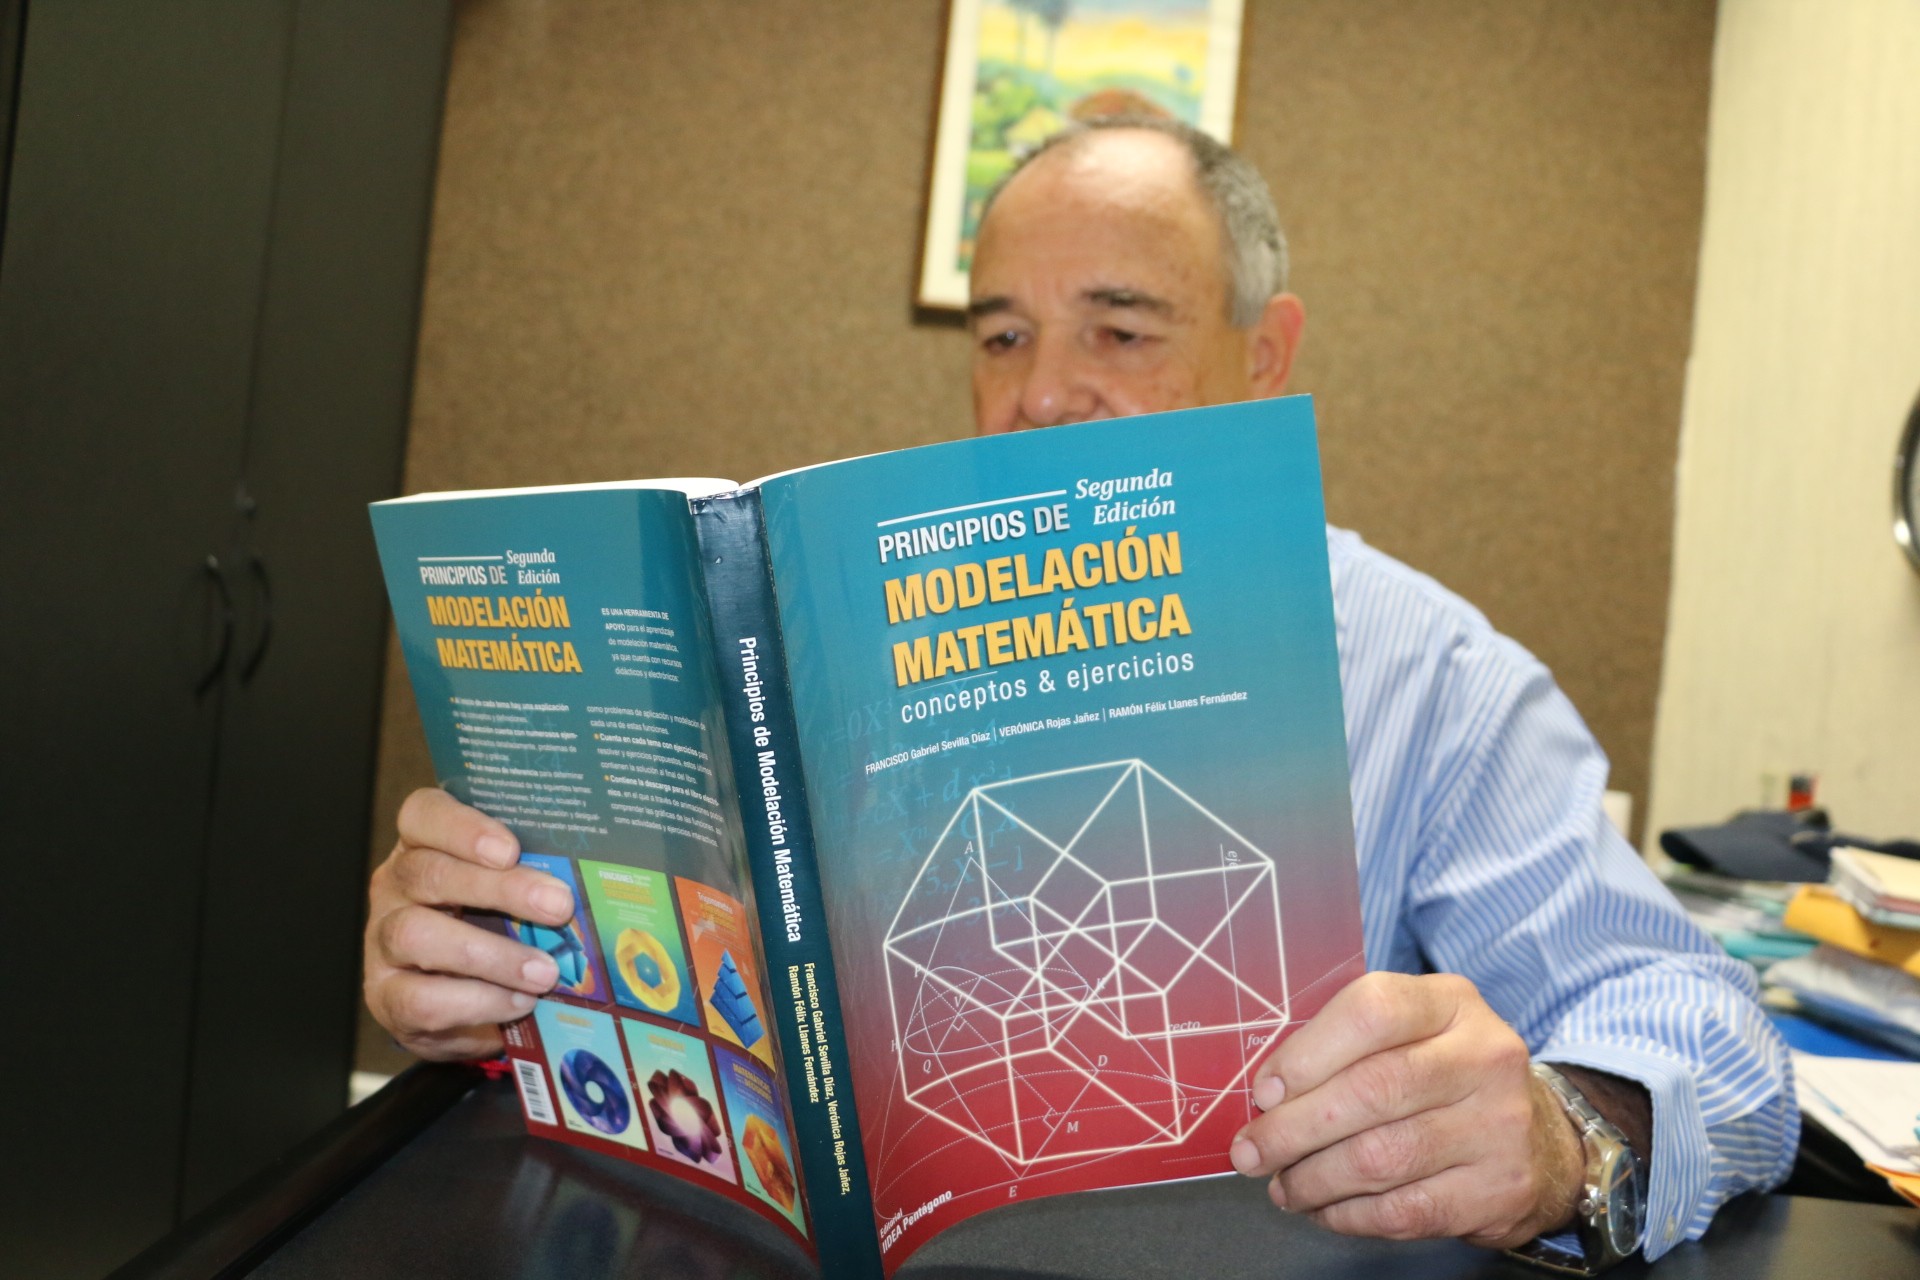 El profesor Ramón Llanes es autor del libro “Principios de Modelación Matemática”